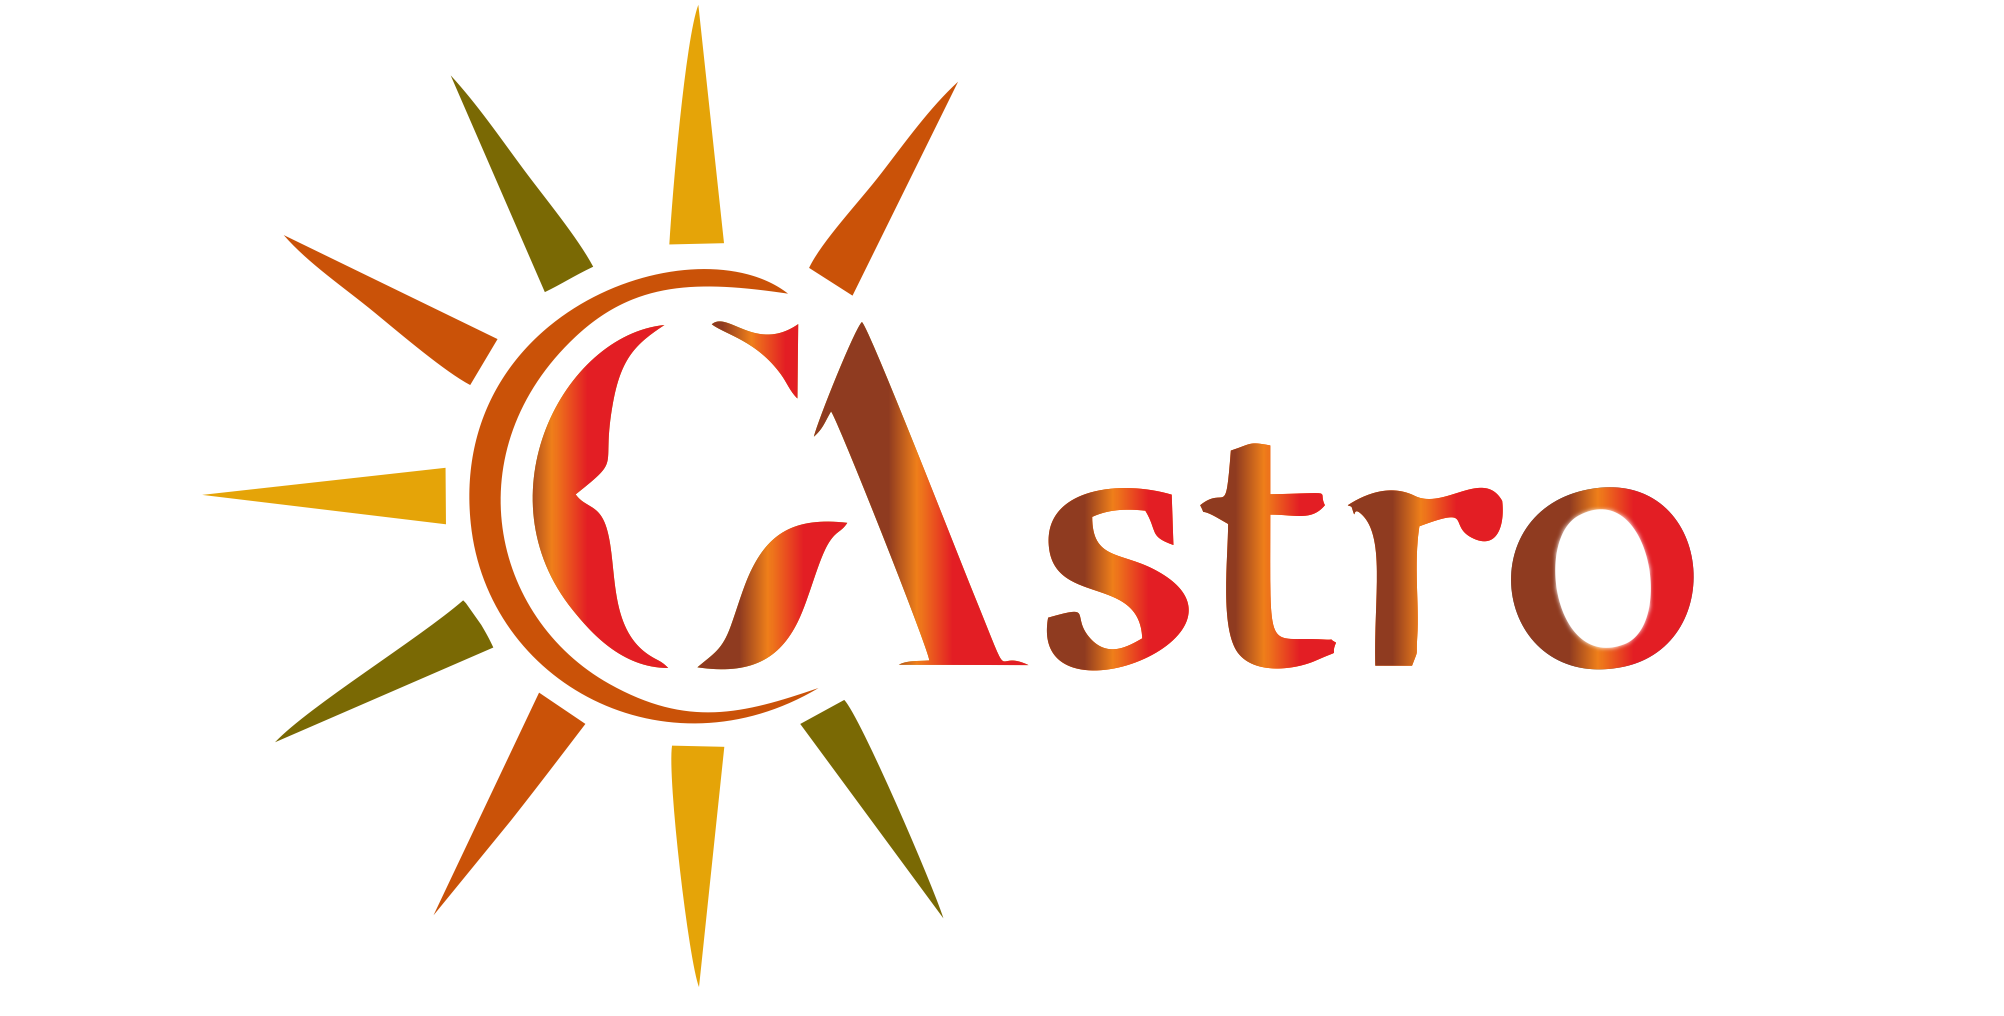 C-Astro